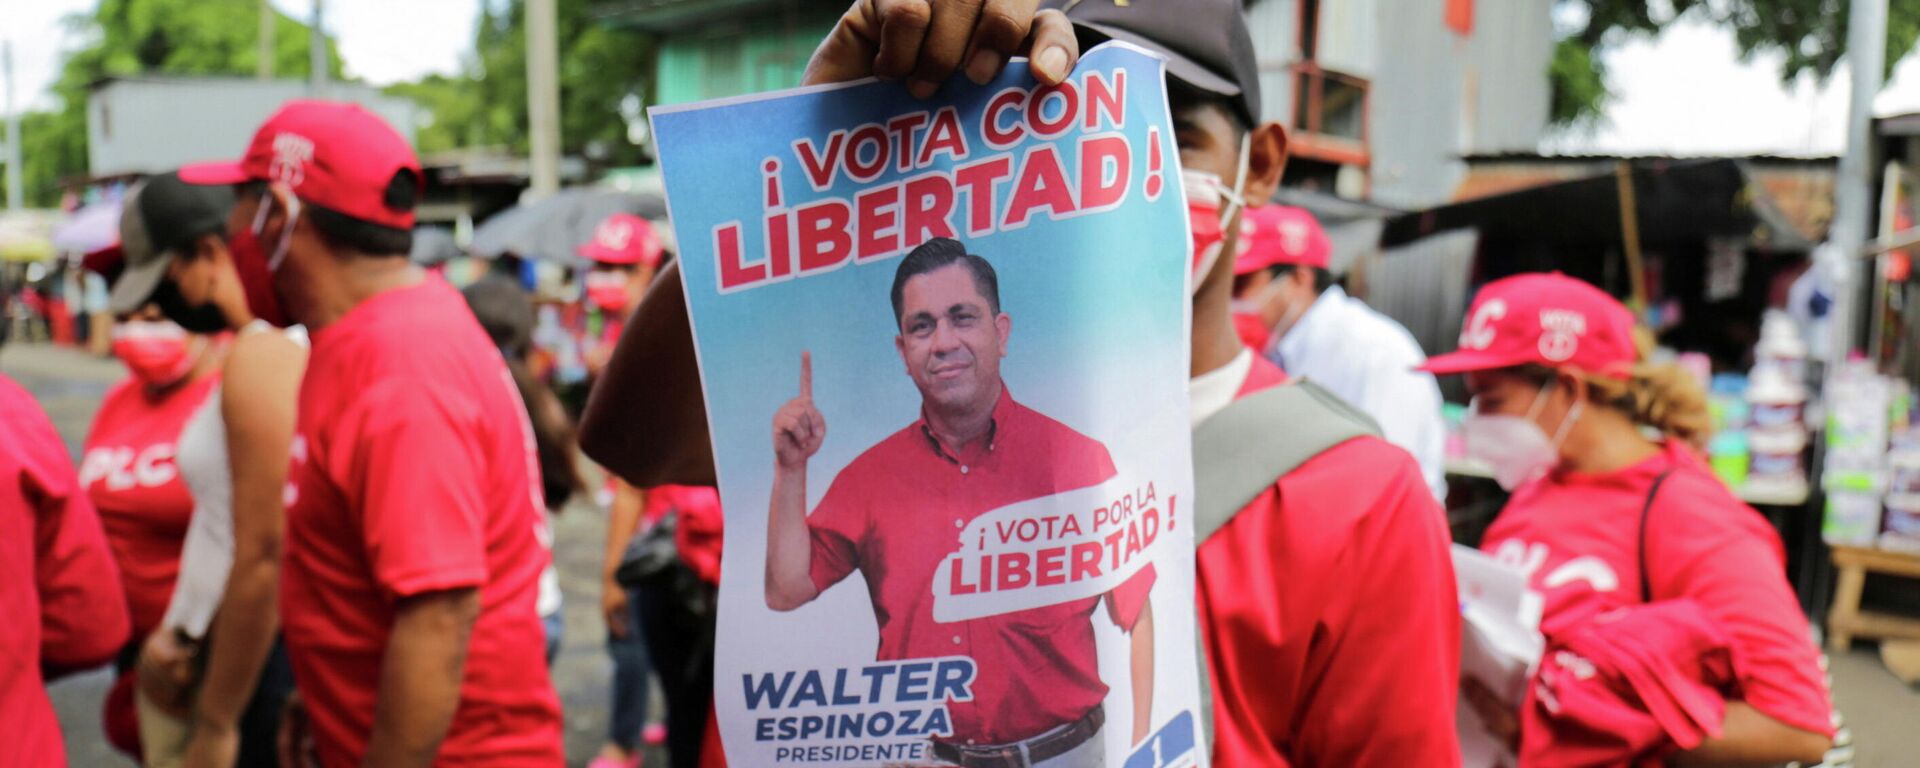 Un chico con la imagen de Walter Espinoza, candidato del Partido Liberal Constitucionalista (PLC) en las Elecciones generales de Nicaragua - Sputnik Mundo, 1920, 05.11.2021